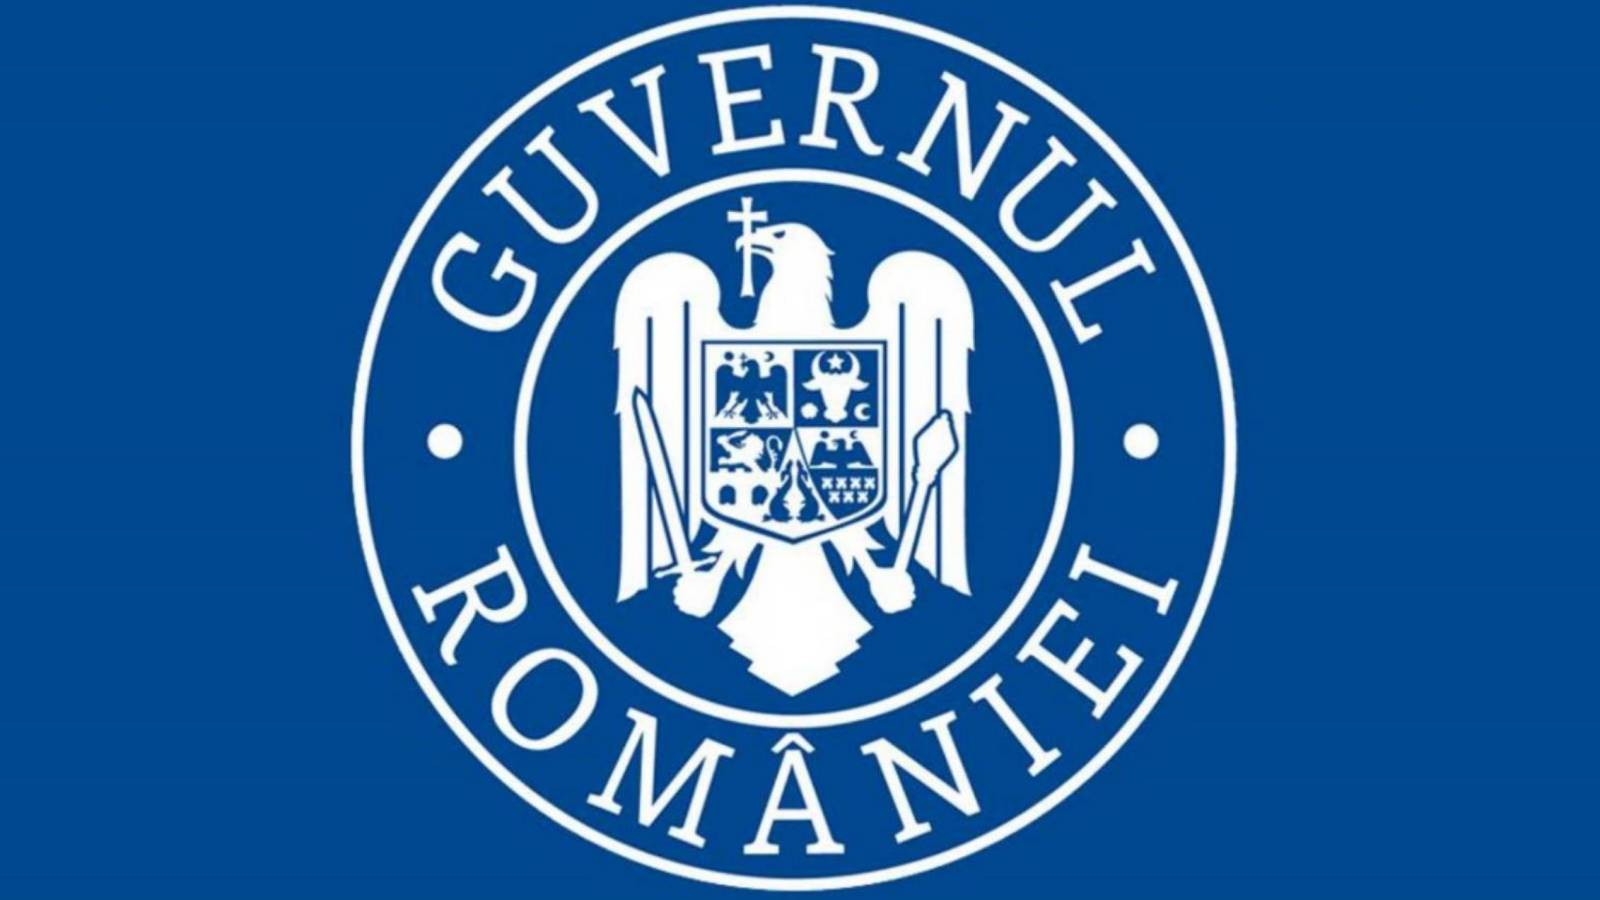 Guvernul Romaniei carantina totala departe